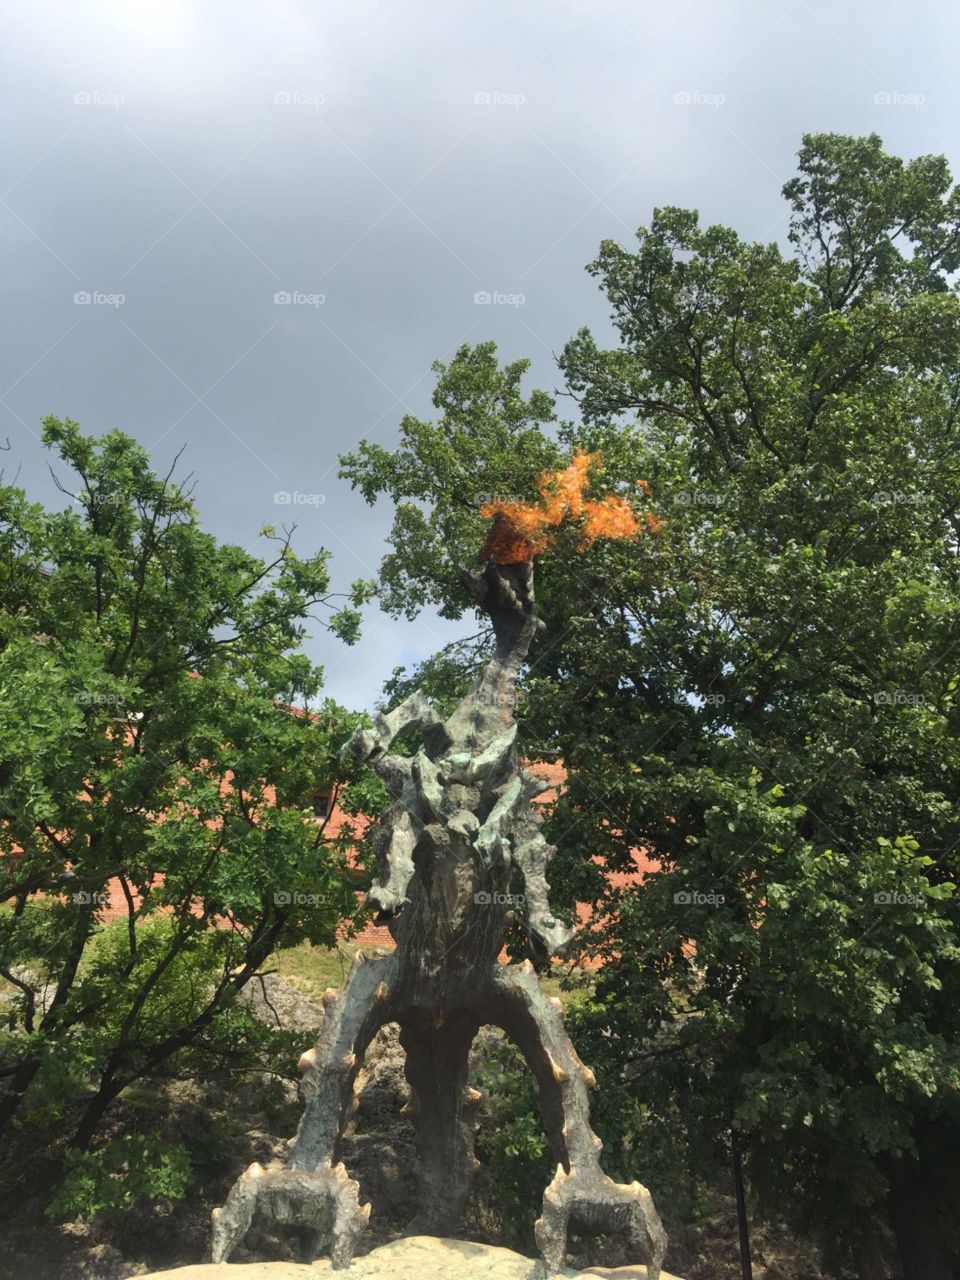 Fire breathing dragon statue outside Wawel Castle, Kraków 